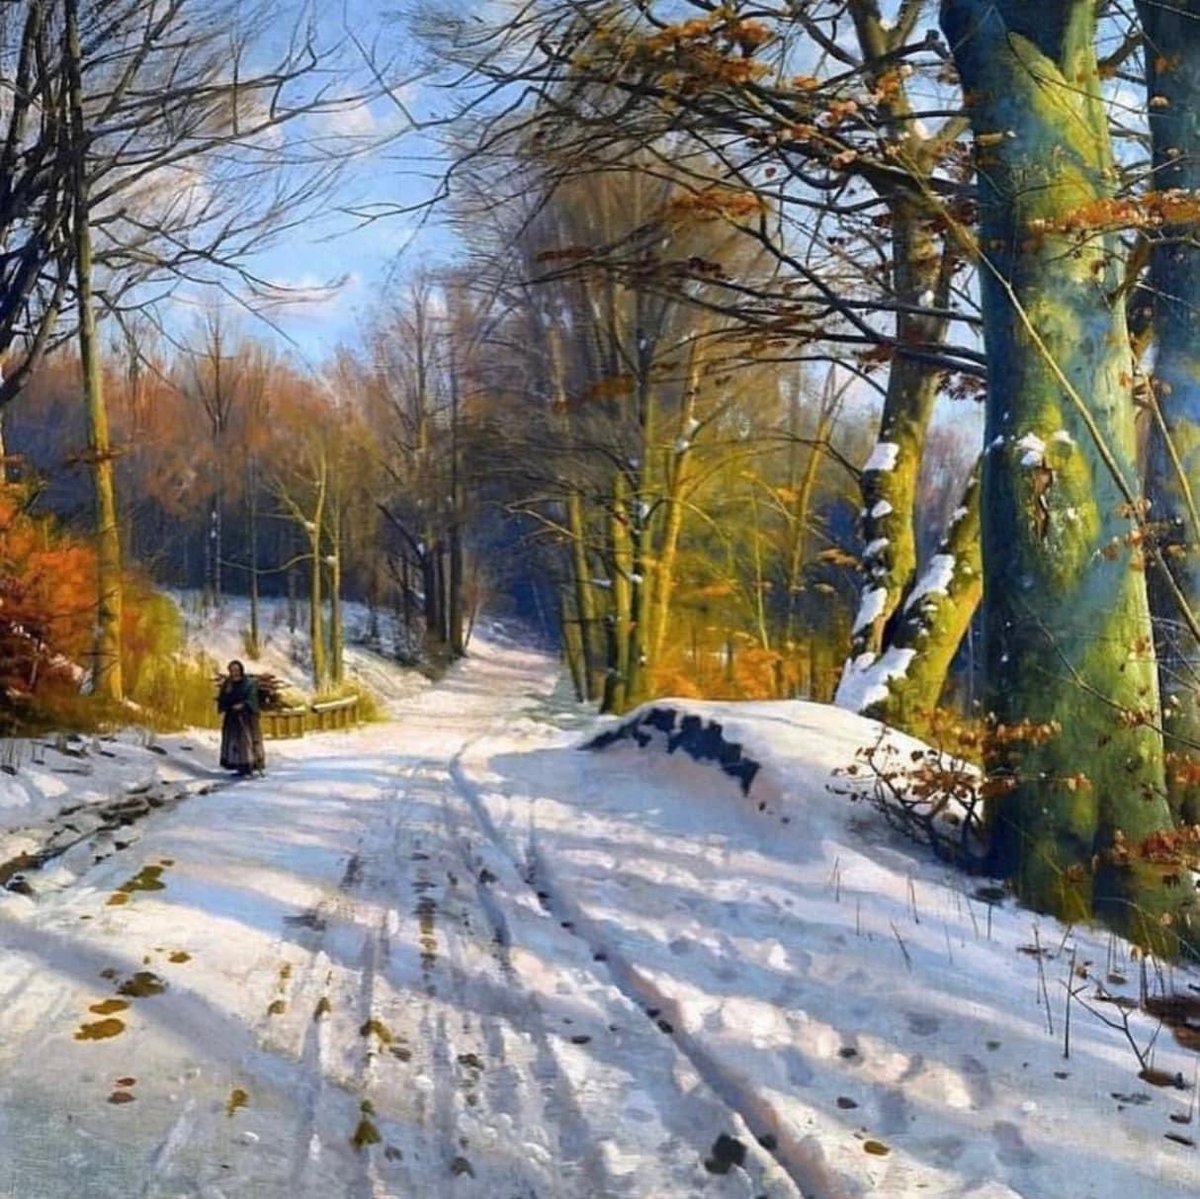 Peder Mørk Mønsted (Danish, 1859 - 1941)
“Winter Landscape”, 1917 
#art #painting #pedermørkmønsted #danishpainter #ArtLovers #fineart #dailyart #pintura #virtualart #loveart